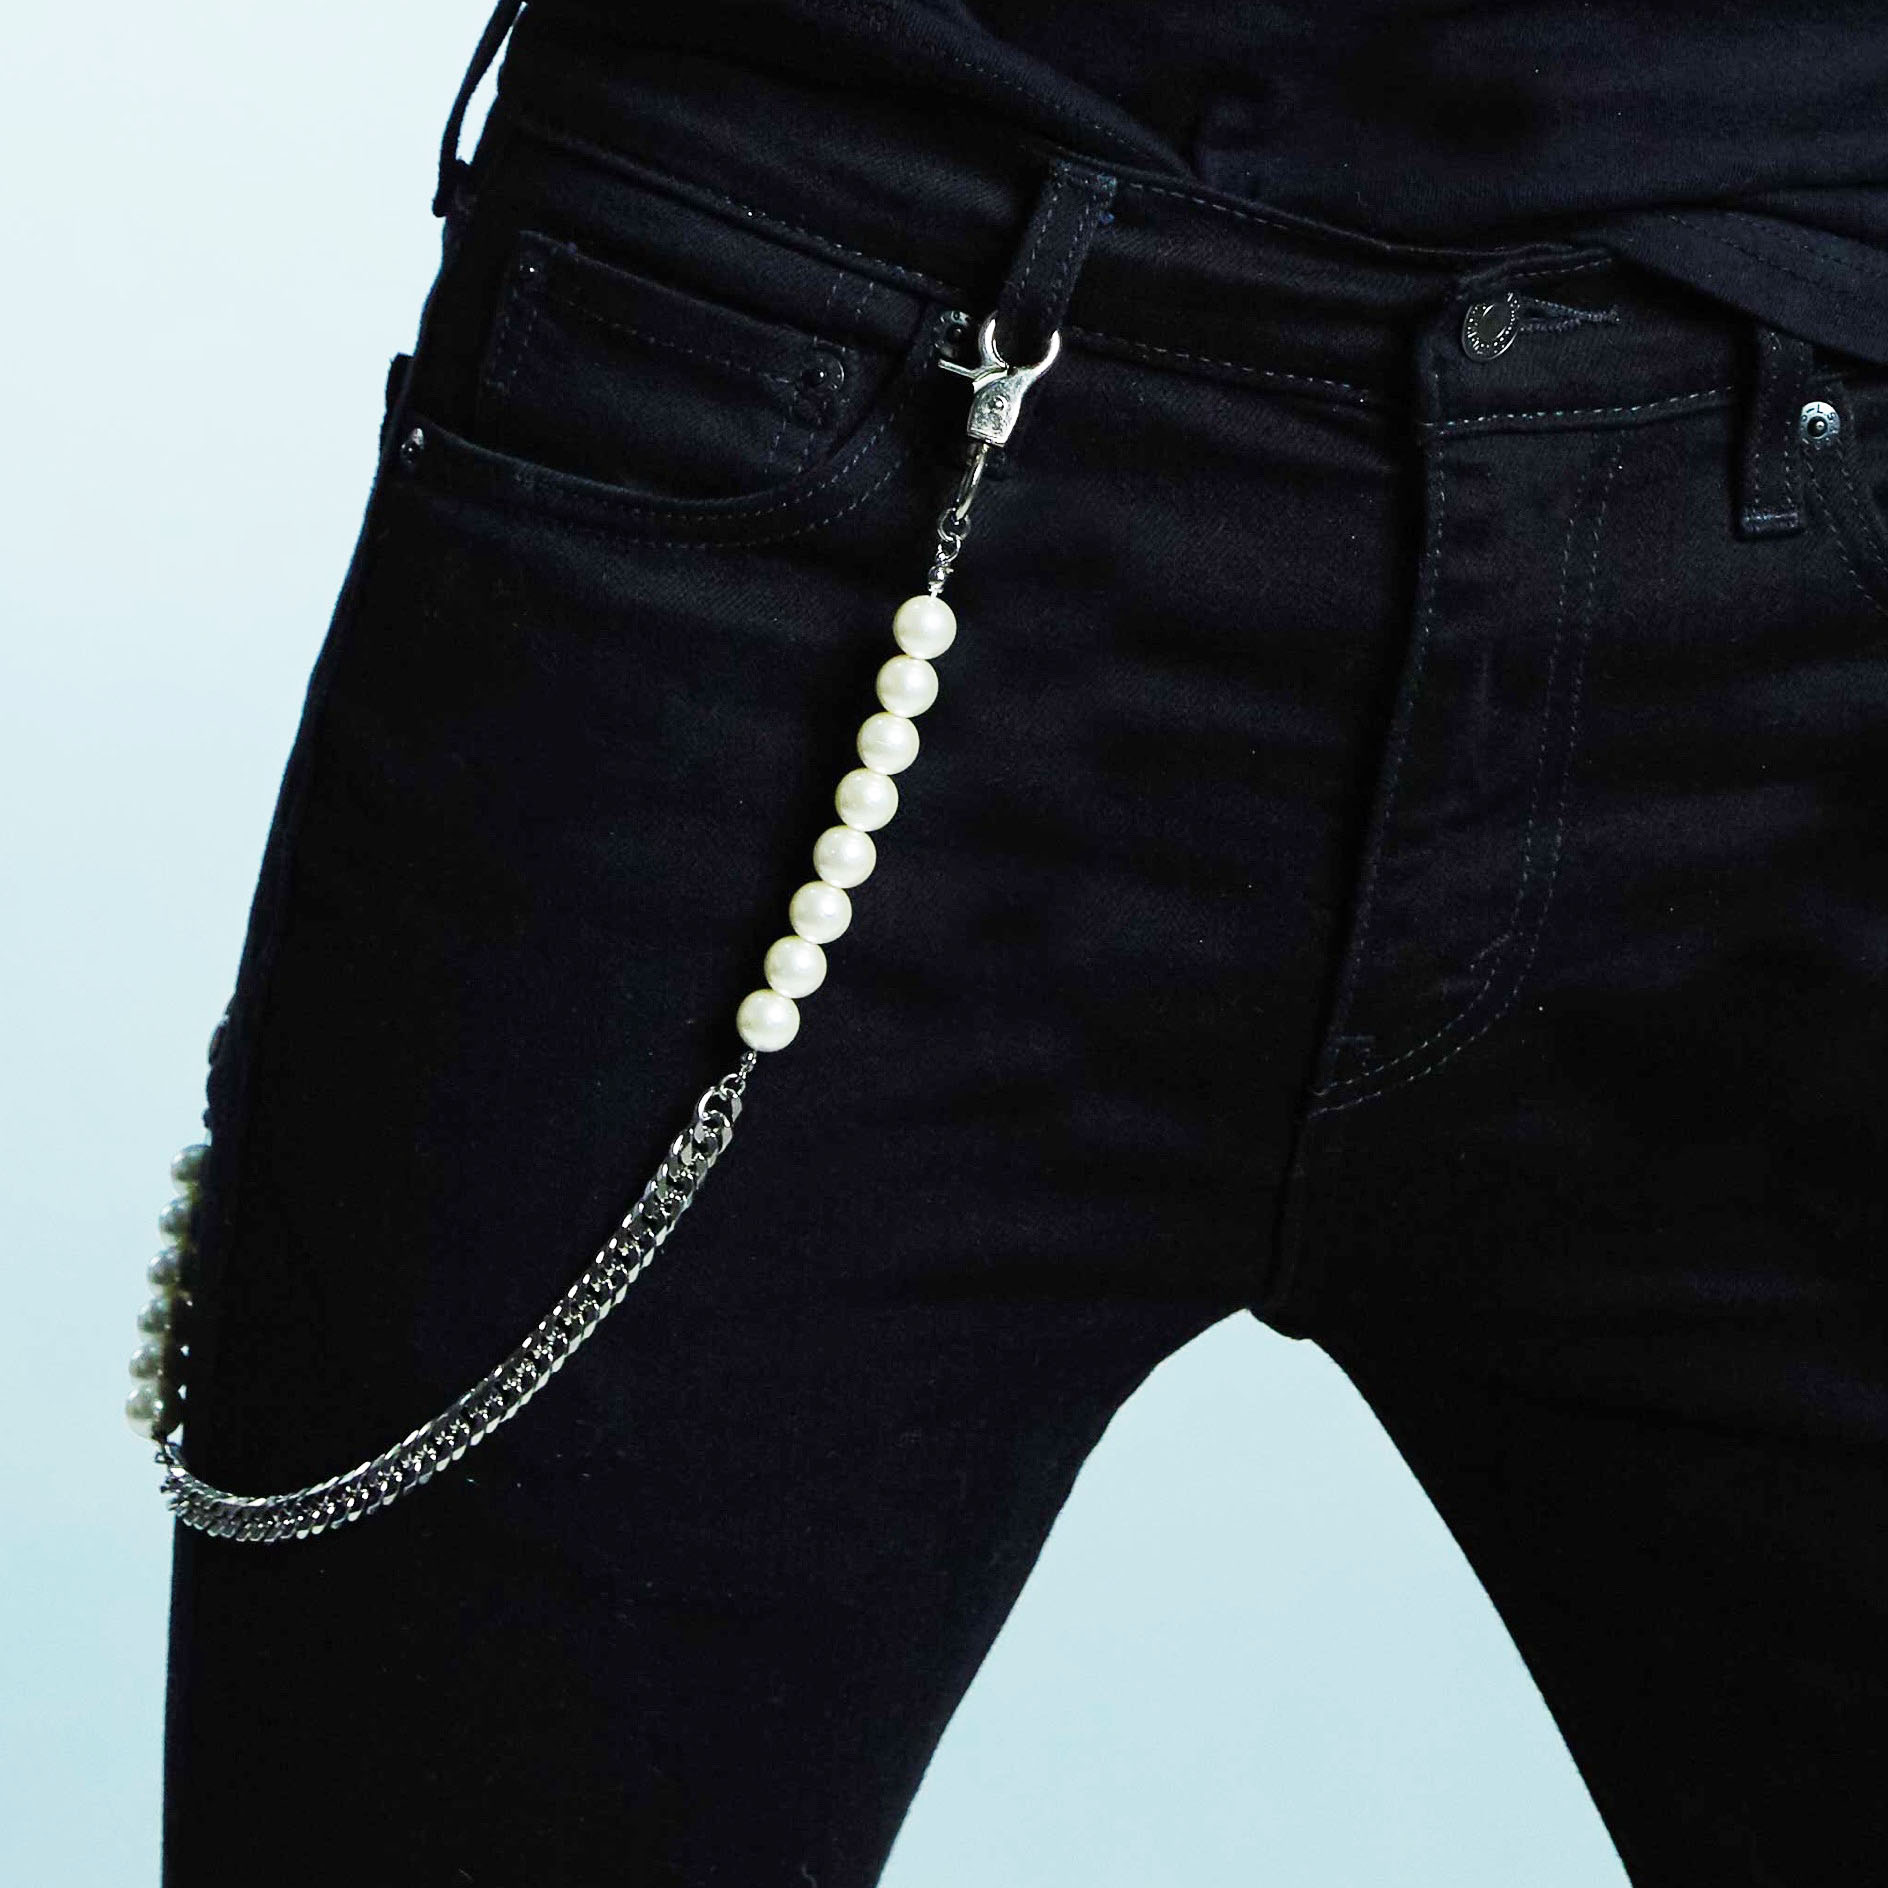 Hình ảnh Xích đeo thắt lưng dây chuỗi đeo đai quần jeans mix ngọc trai ấn tượng cool ngầu